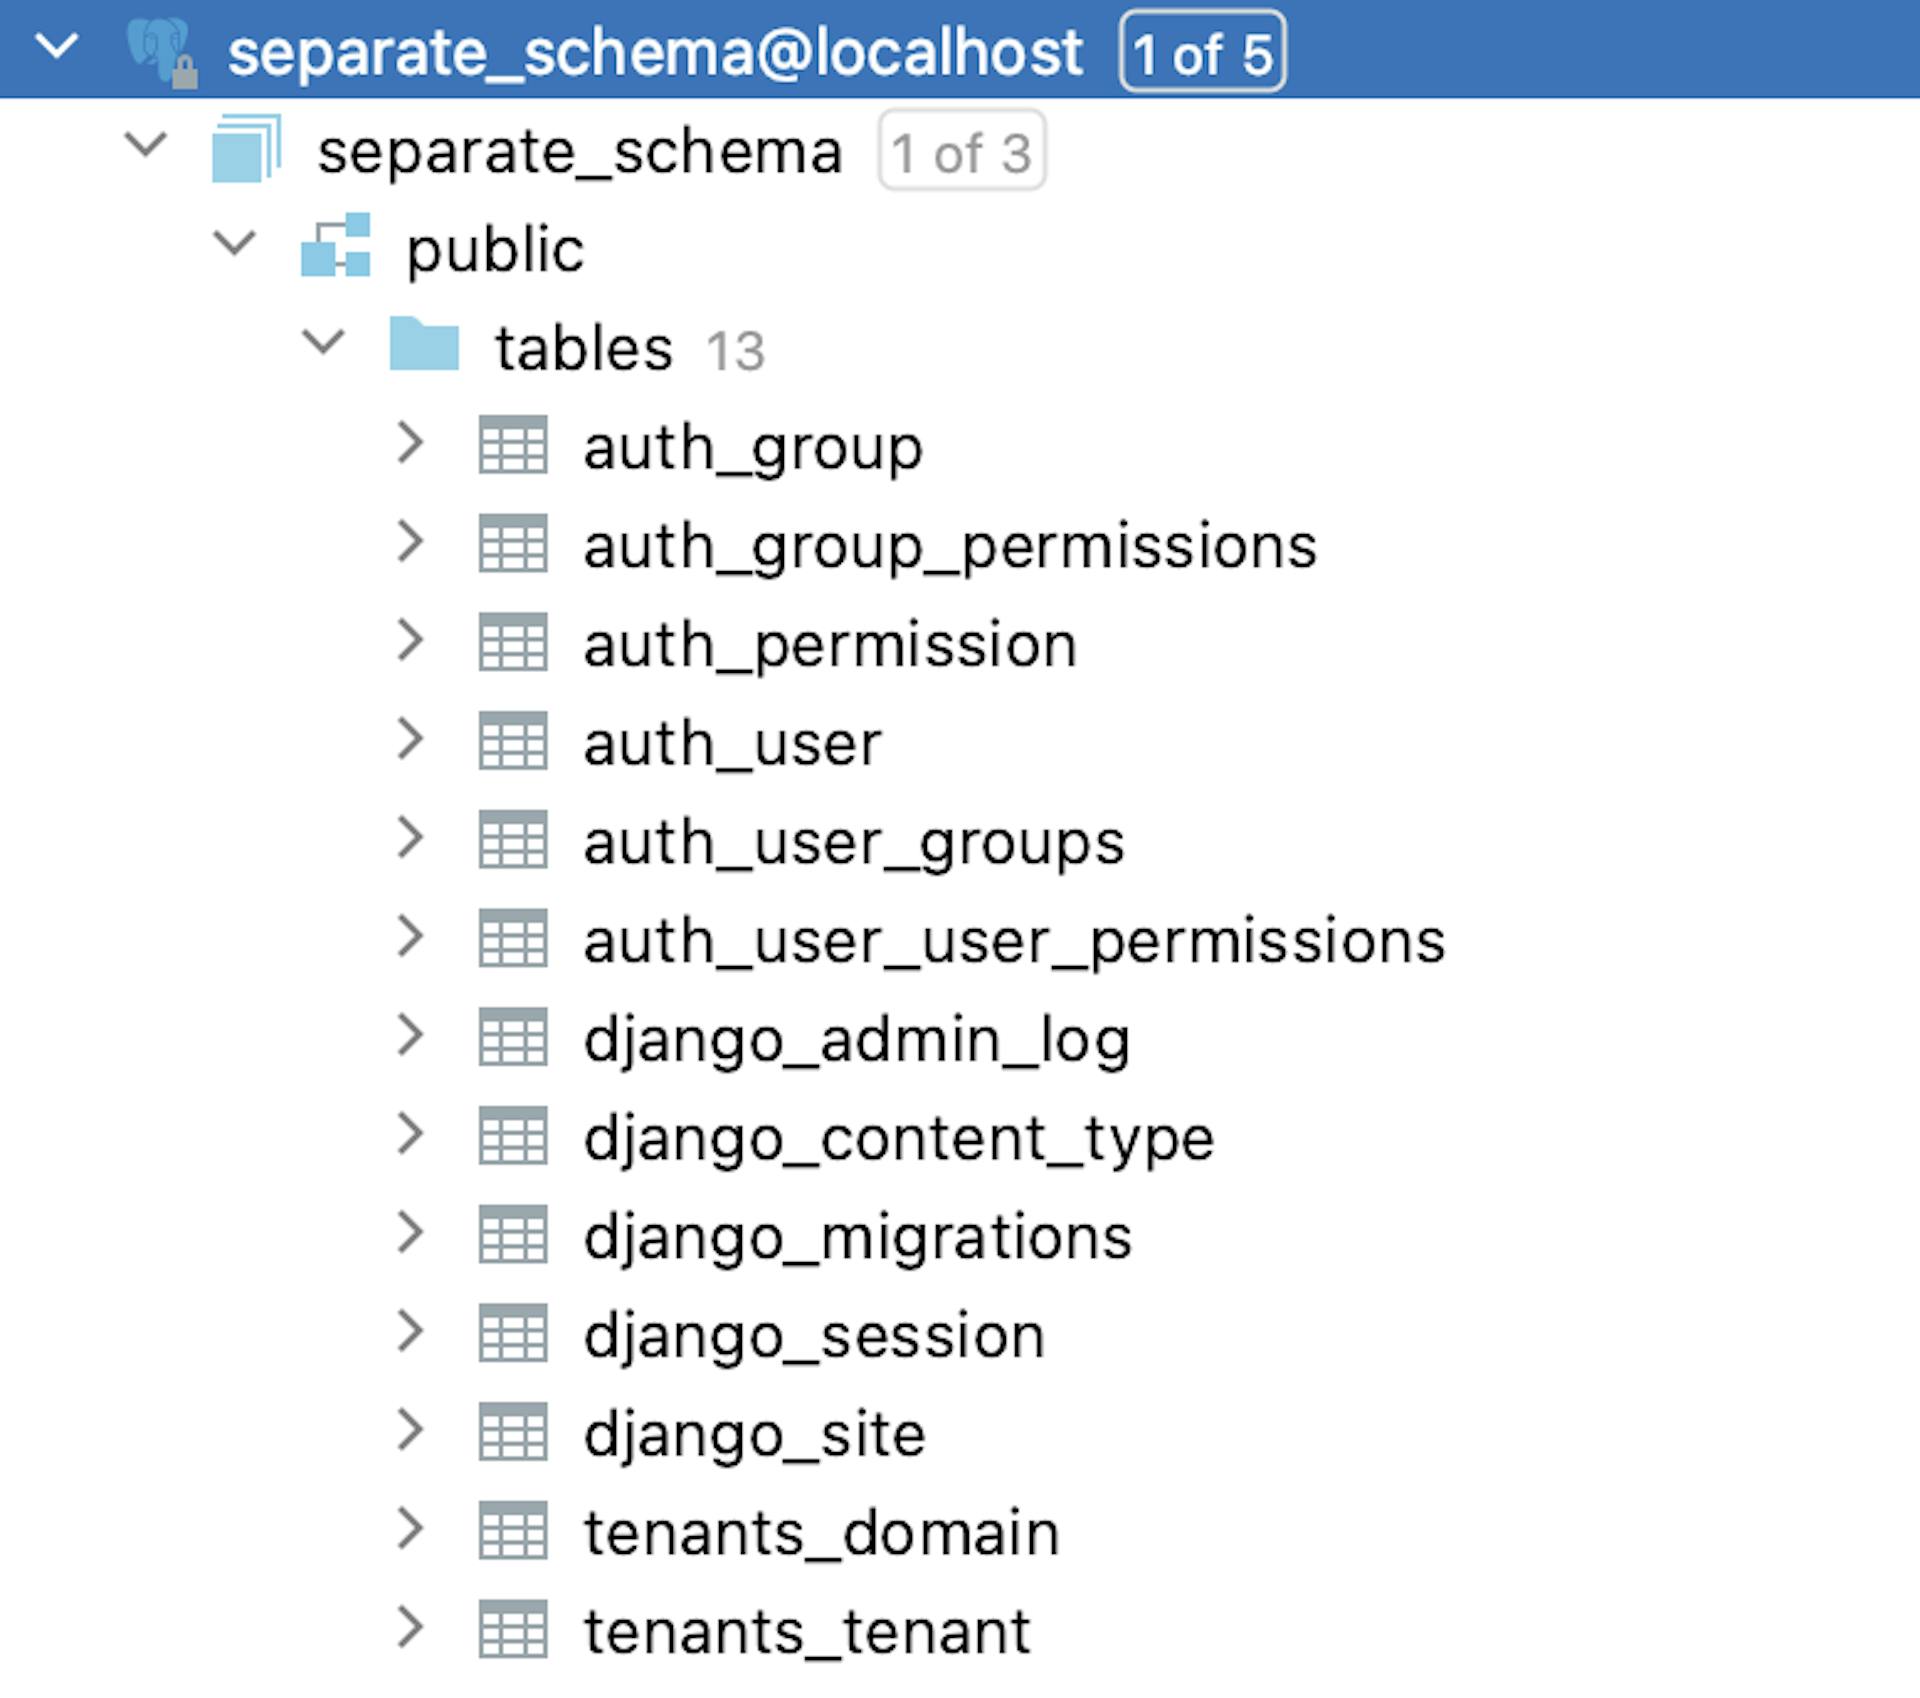 La estructura de la base de datos después de la primera ejecución del comando migrar_schemas